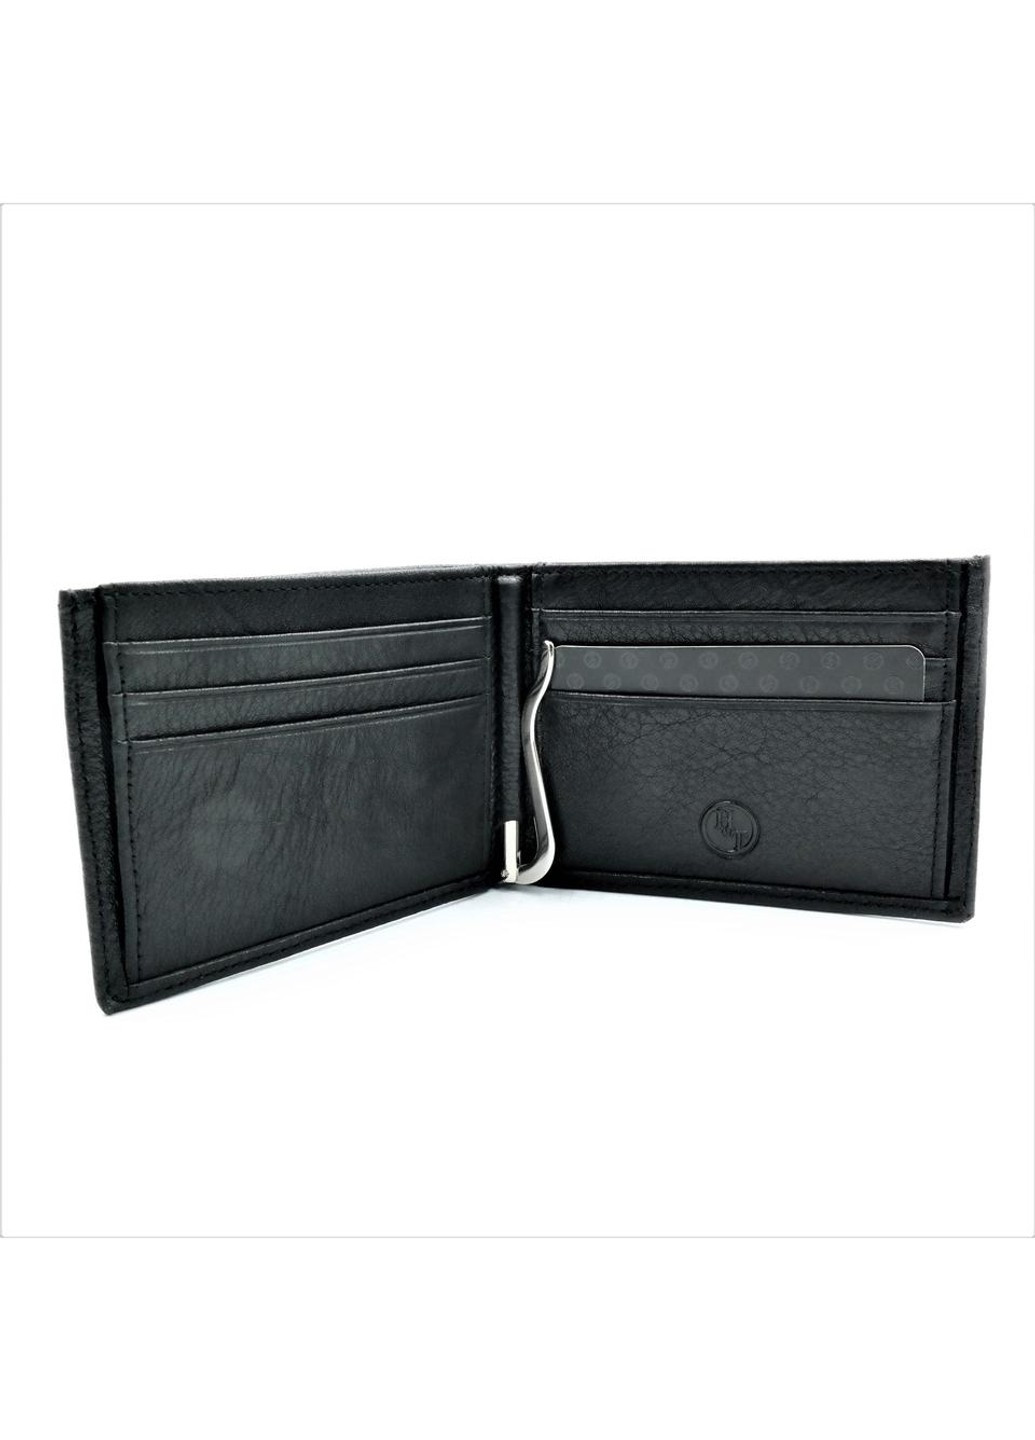 Мужской кожаный кошелек-зажим 11 х 8 х 2,5 см Черный wtro-168-24A Weatro (272950019)